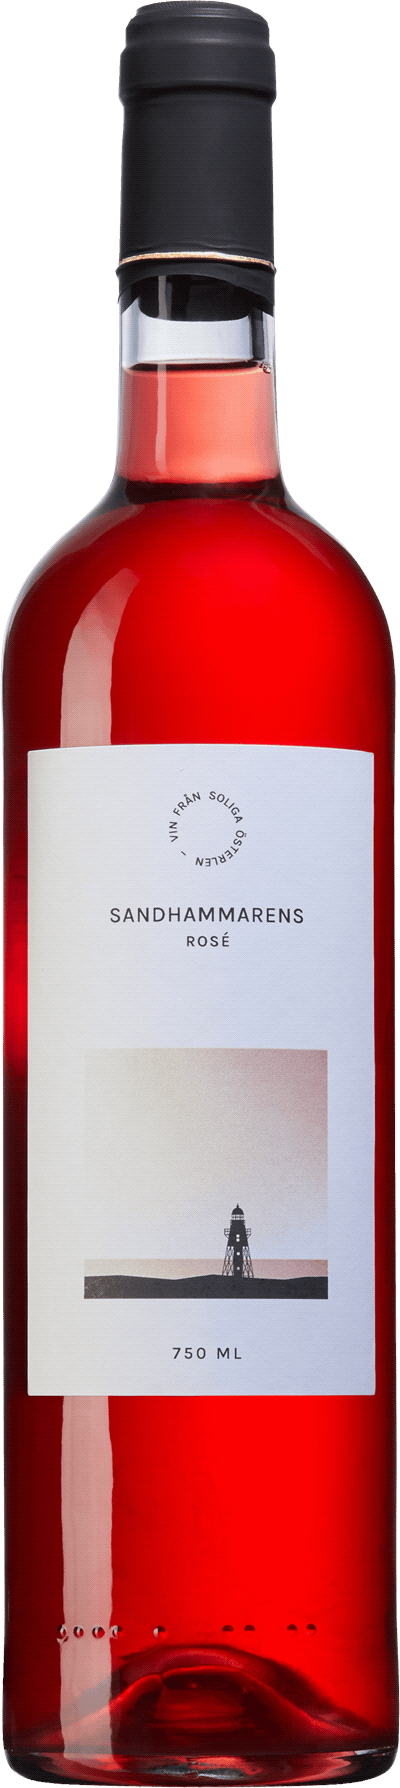 Sandhammarens Rosé Österlens vingårdspark Tygeå